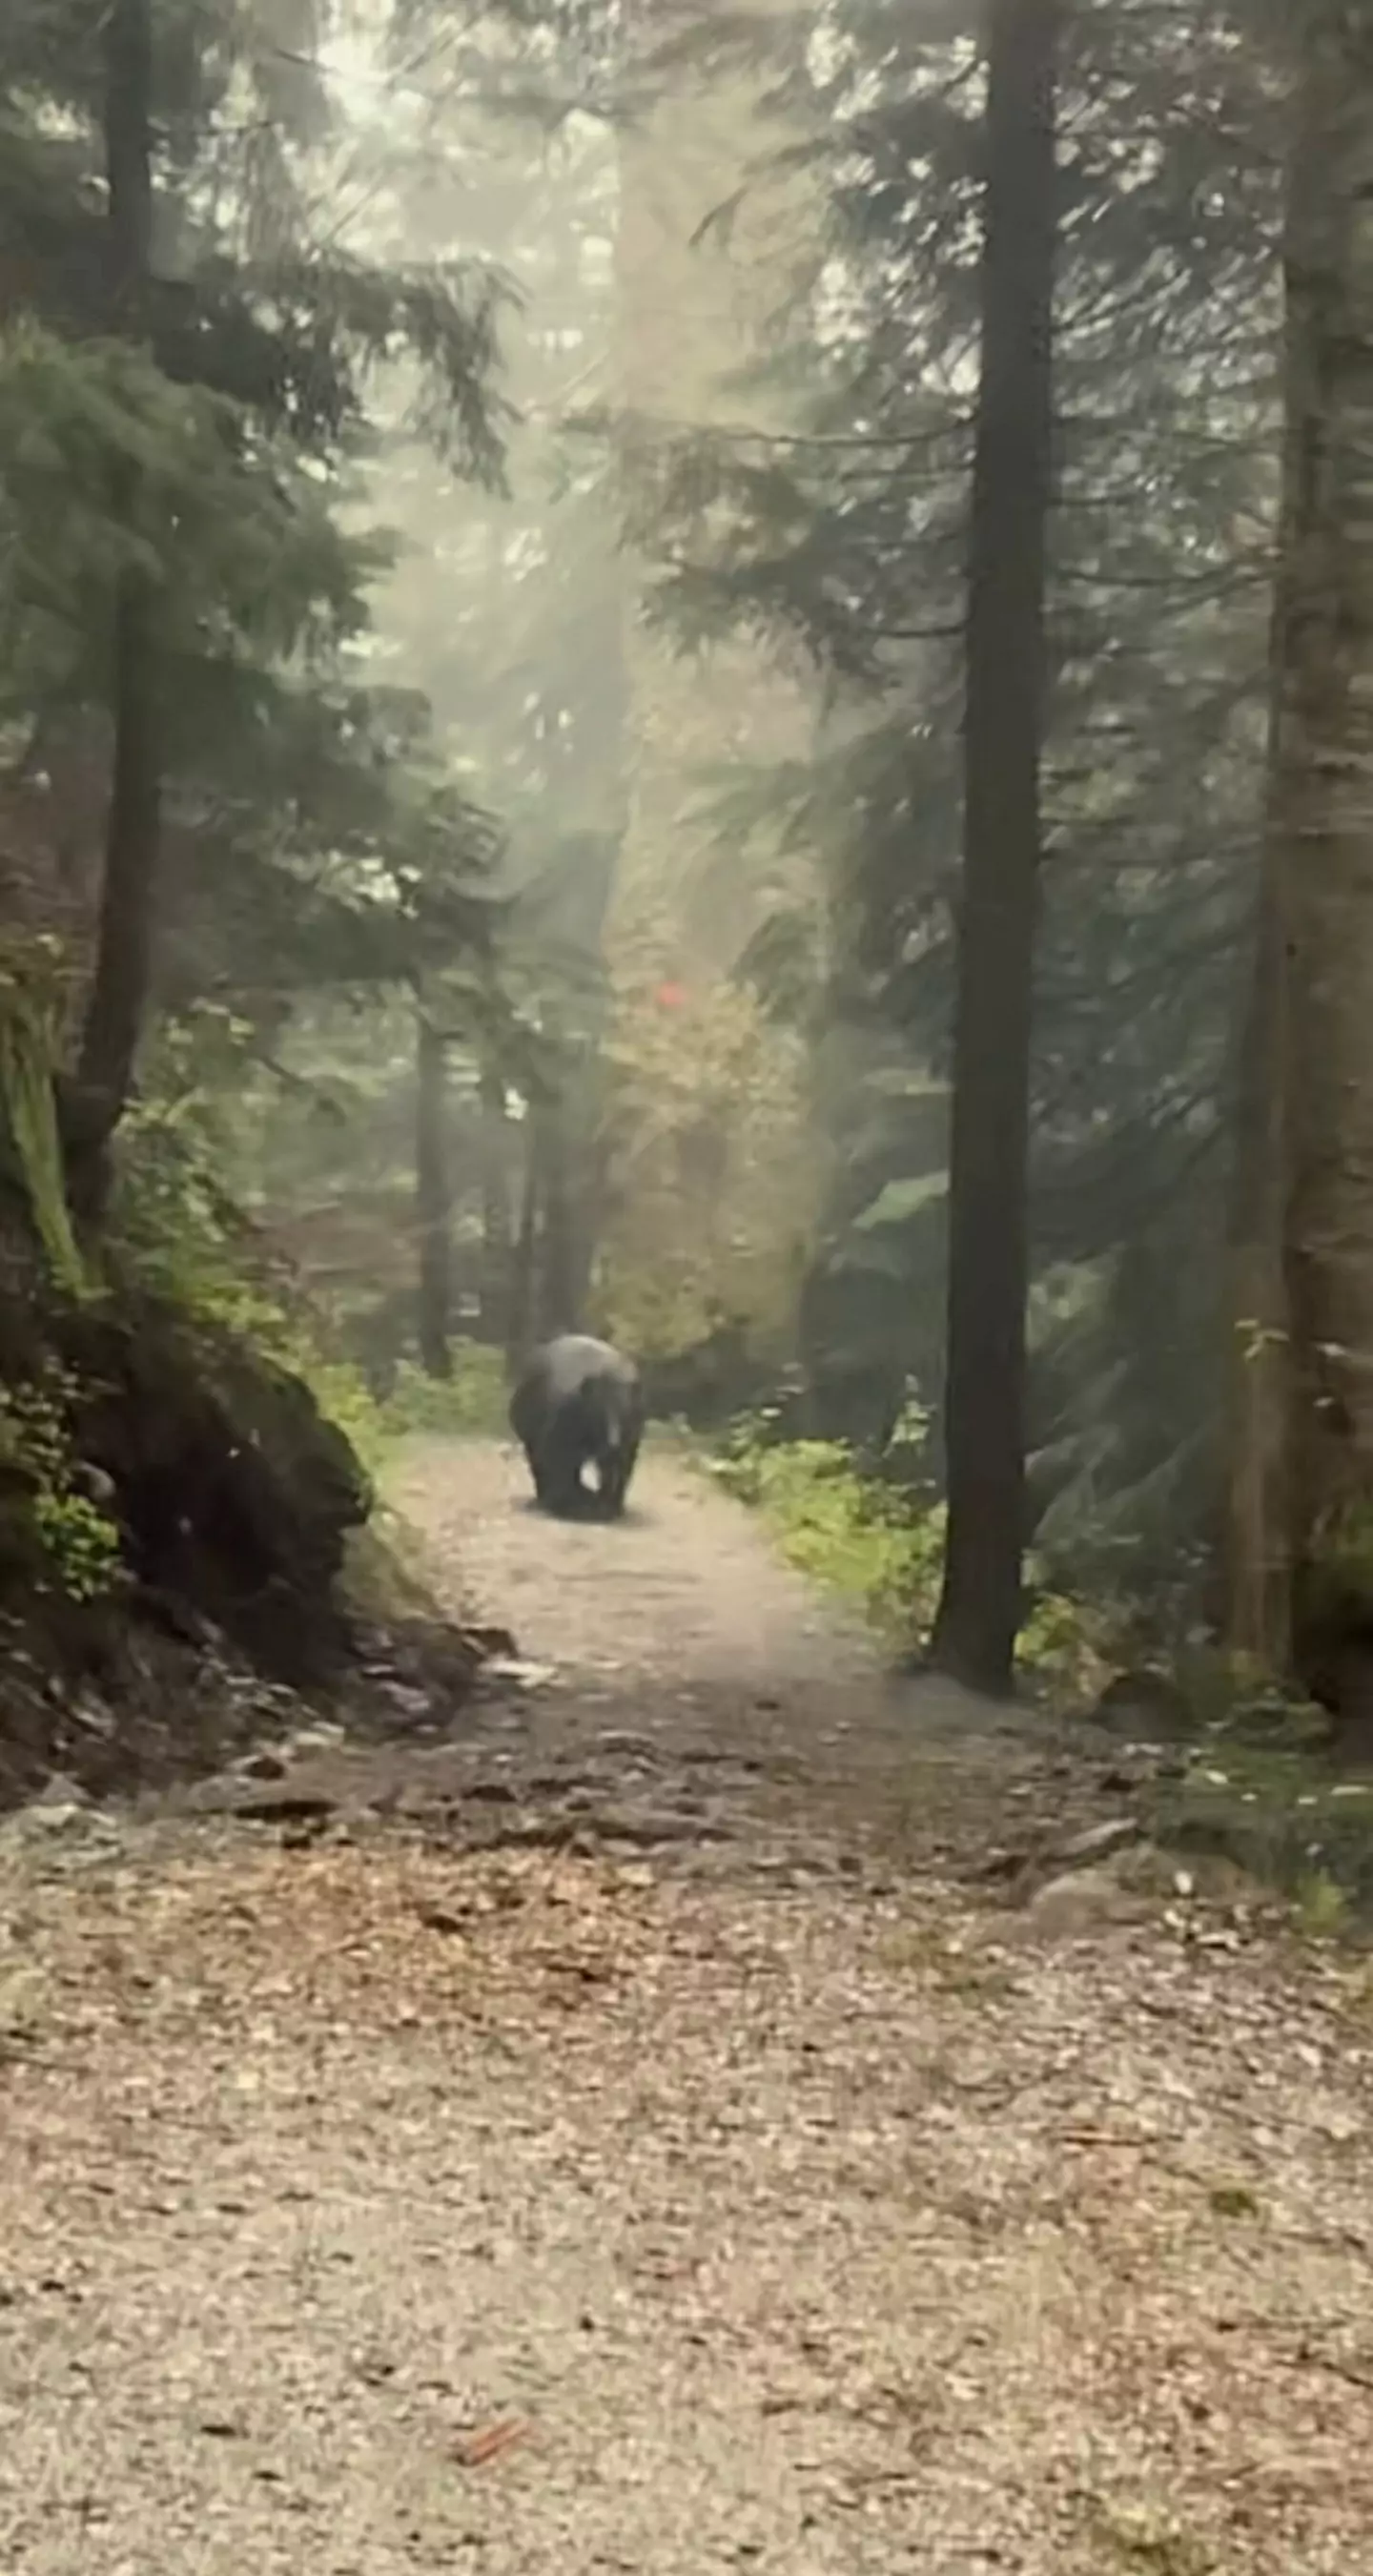 The bear followed them for half an hour.